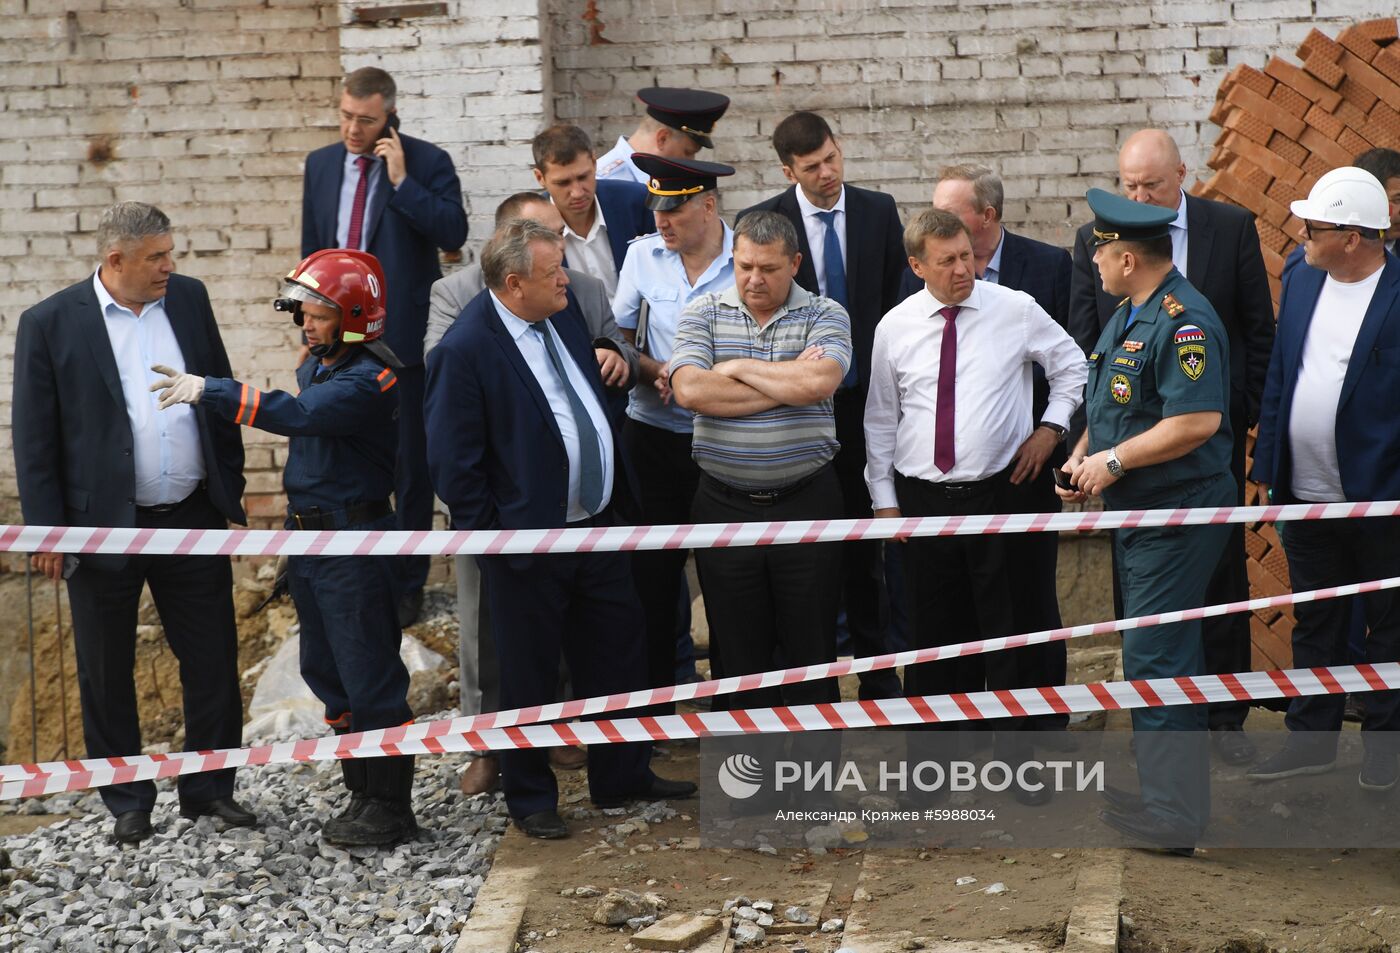 В Новосибирске на рабочих обрушилась стена строящегося здания